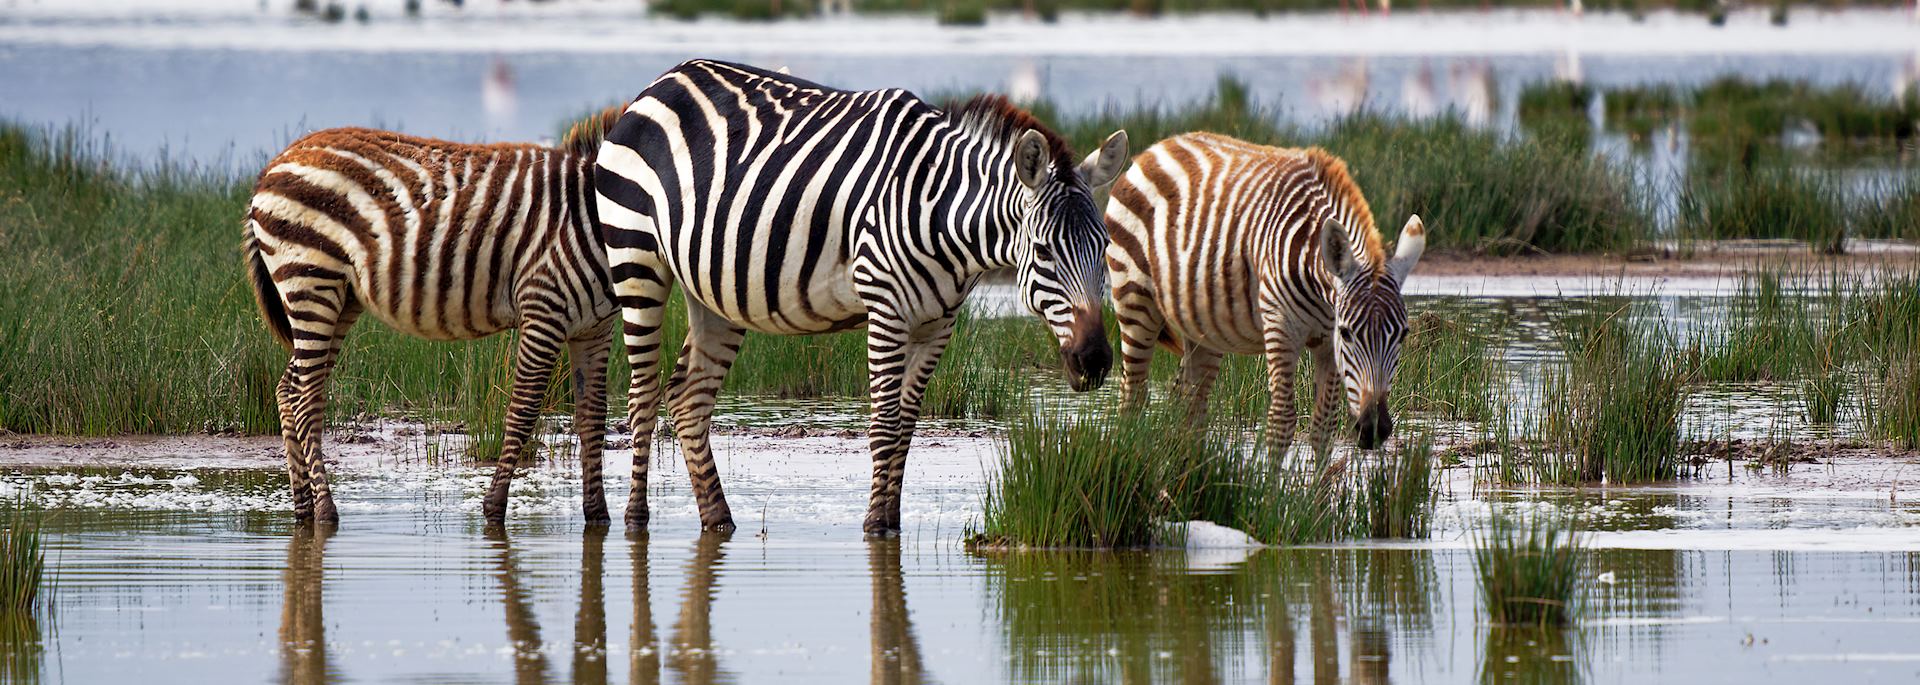 Zebra in Amboseli National Park